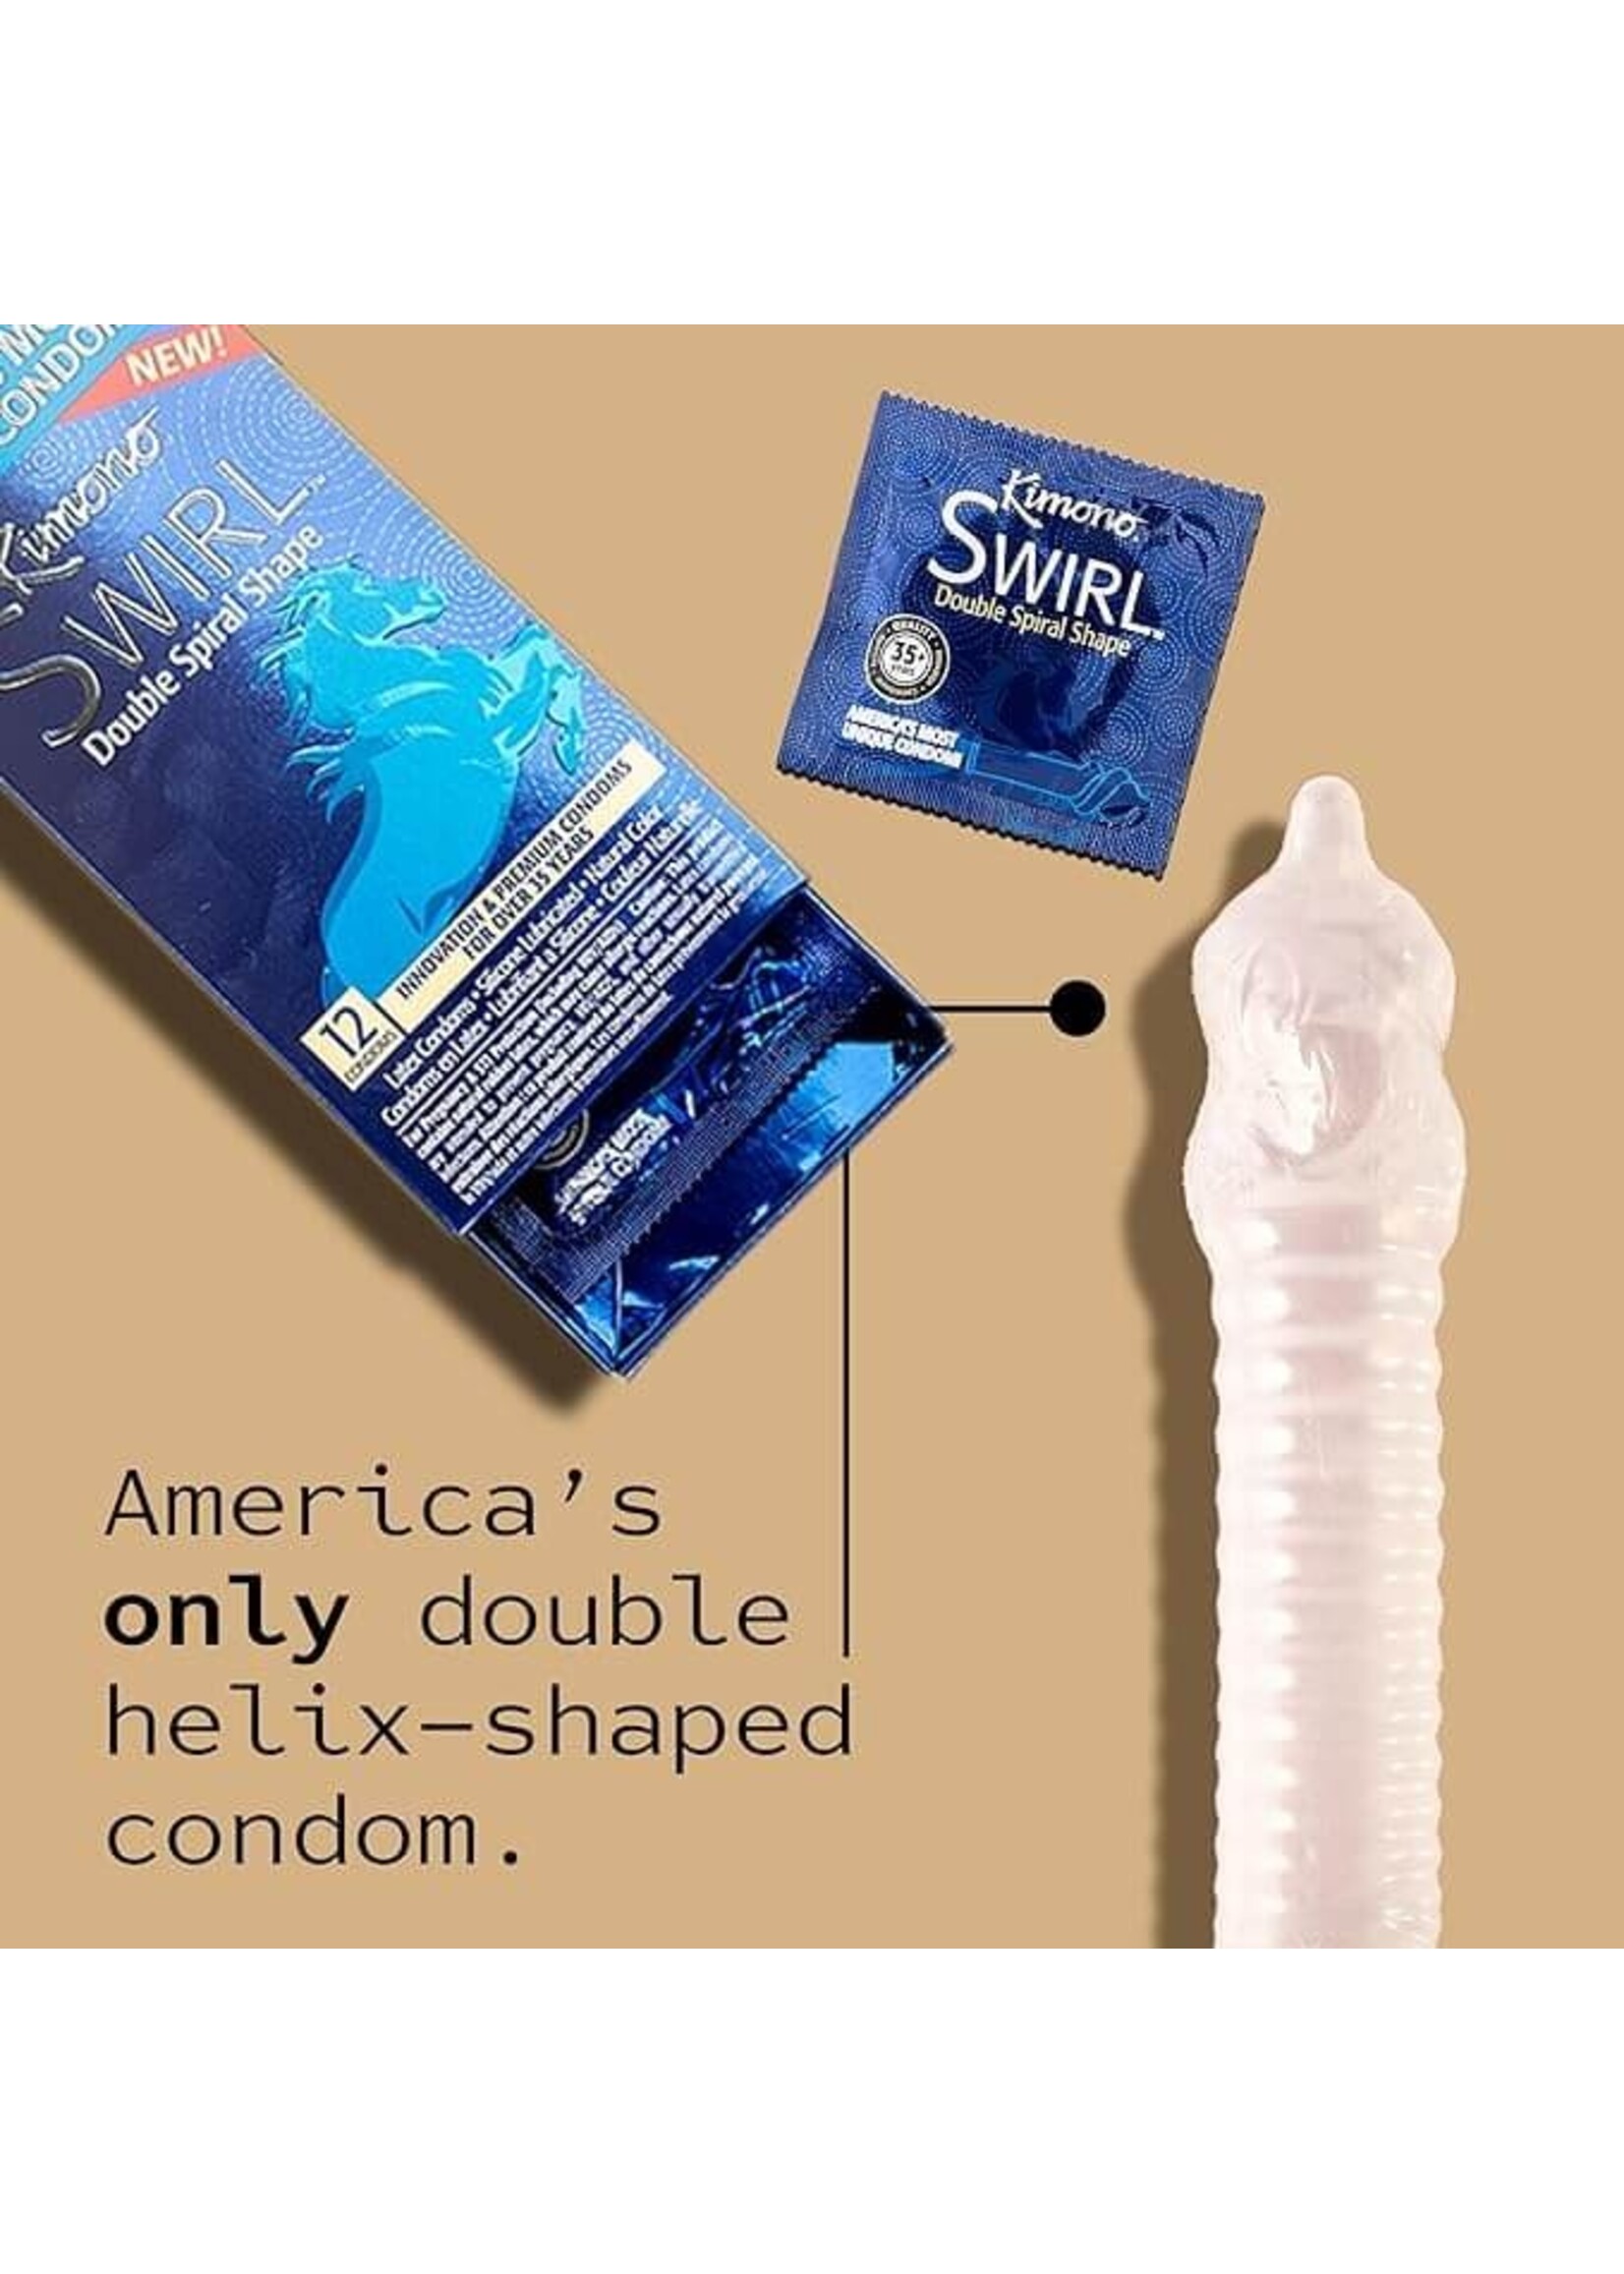 Kimono Swirl 12 Count Condoms